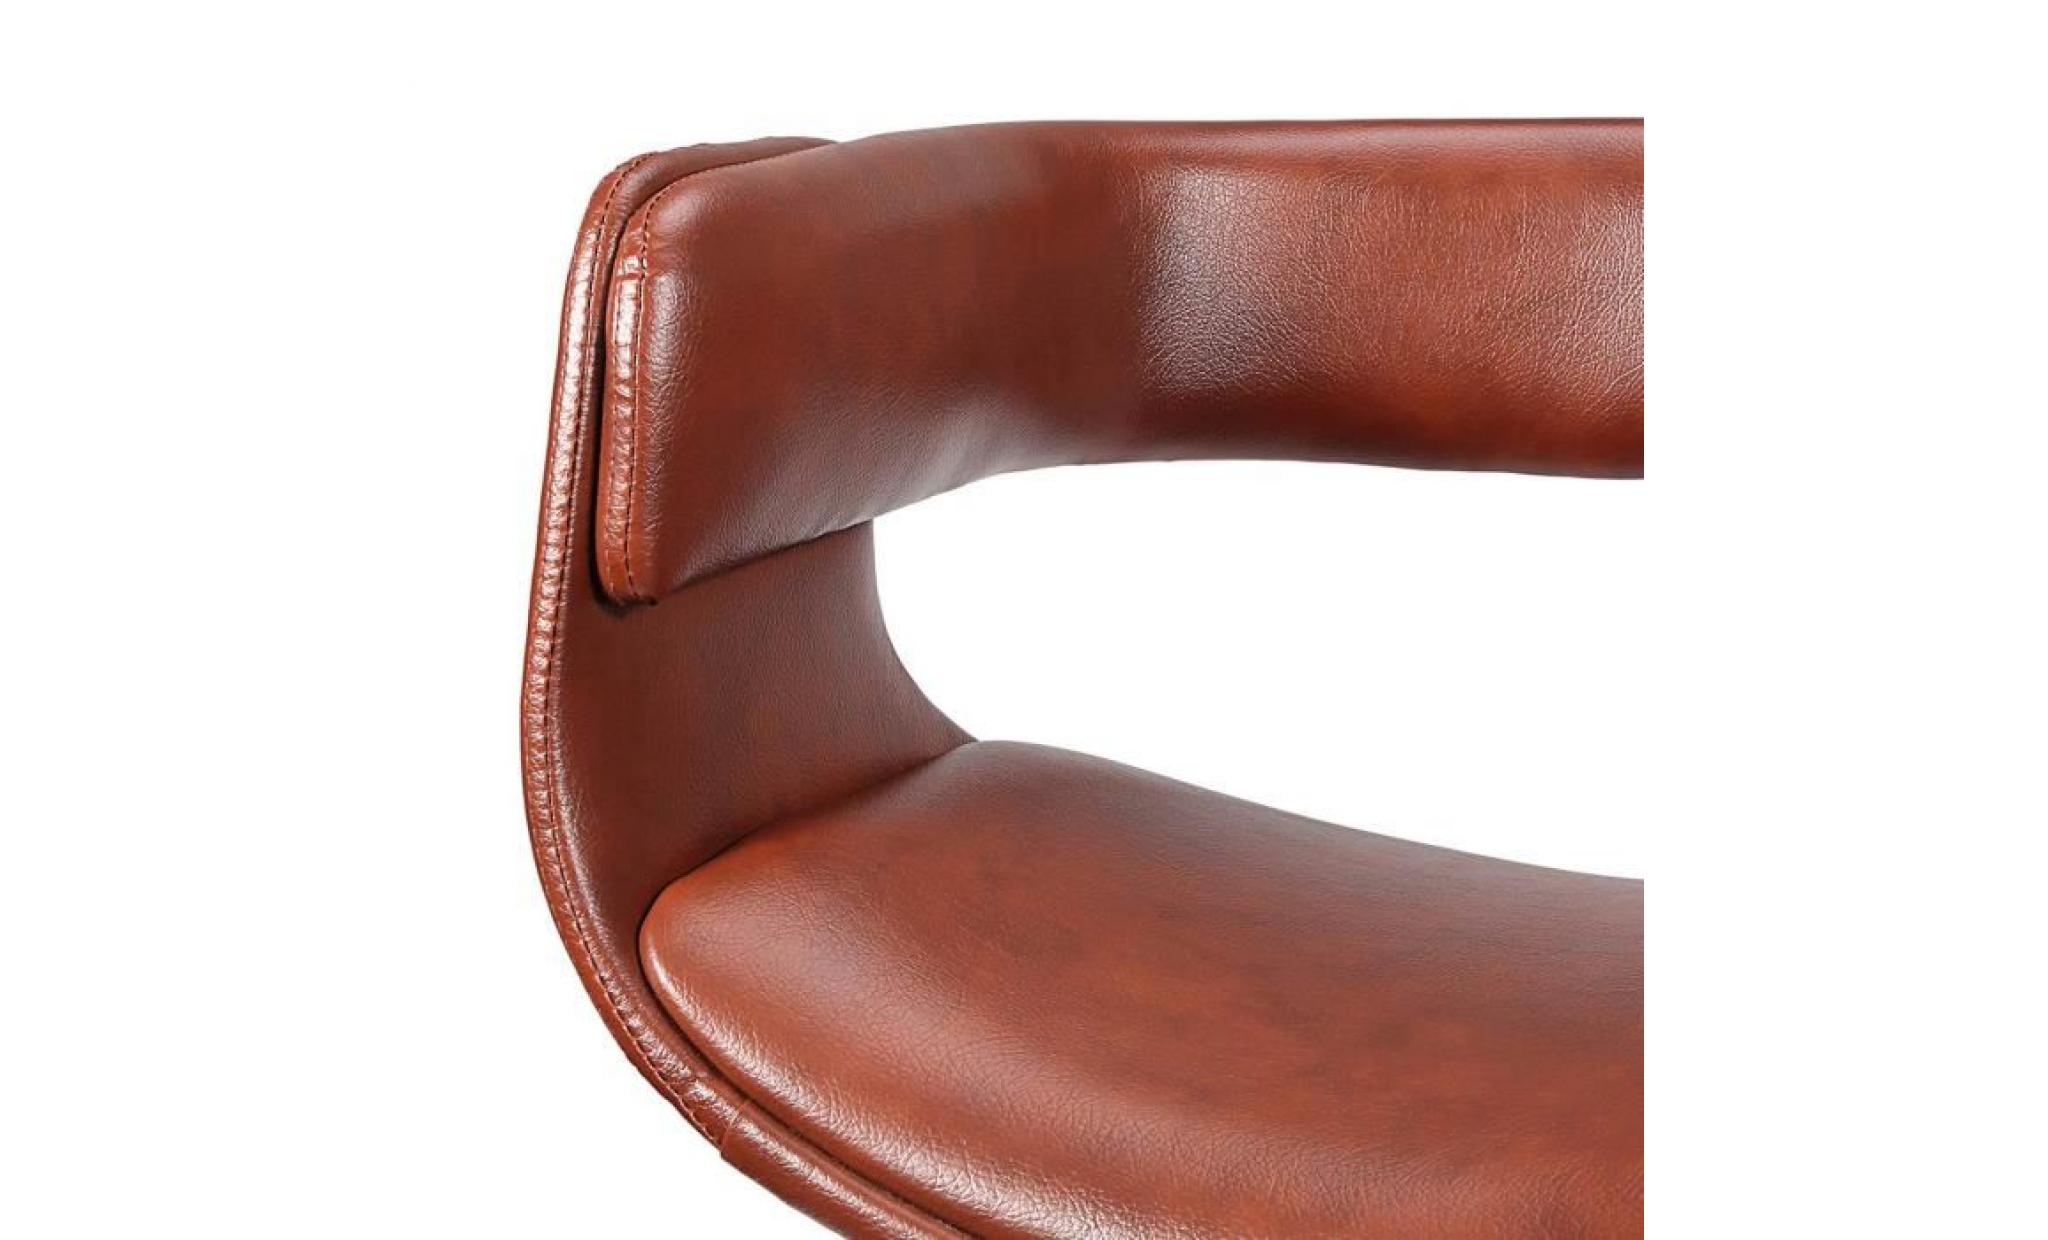 my sit tabouret de travail chaise de bureau francis en brun siège pivotant réglable en hauteur rembourré avec roulettes design rétro pas cher